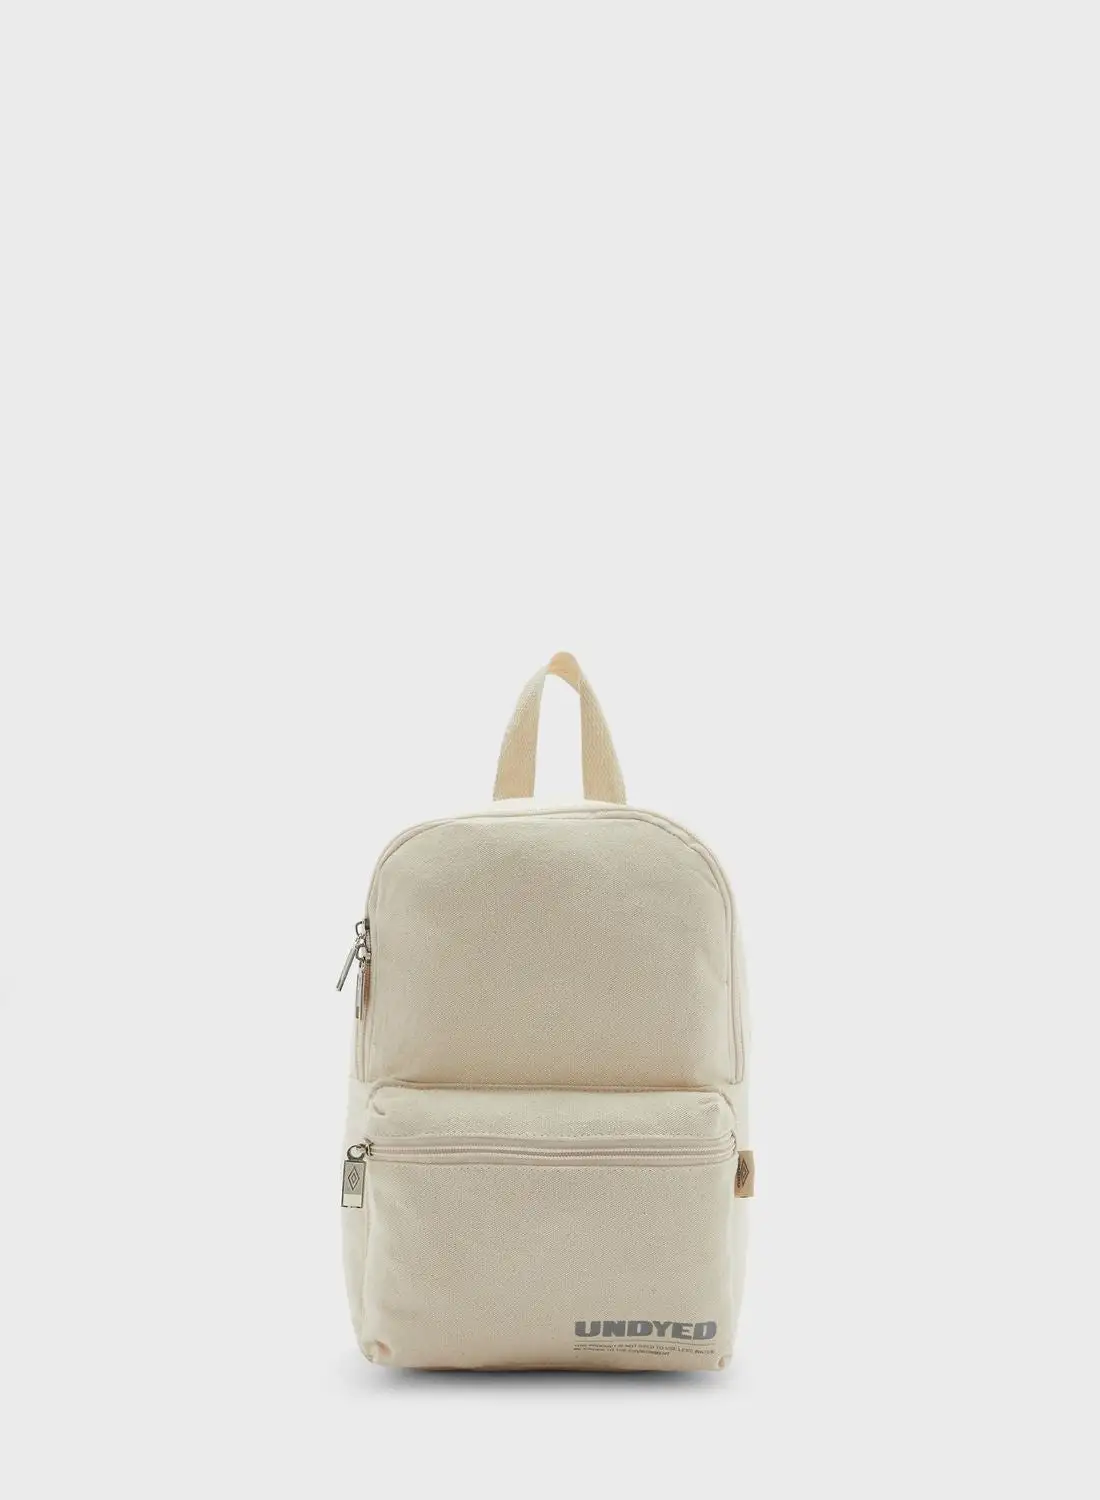 umbro Undyed Backpack